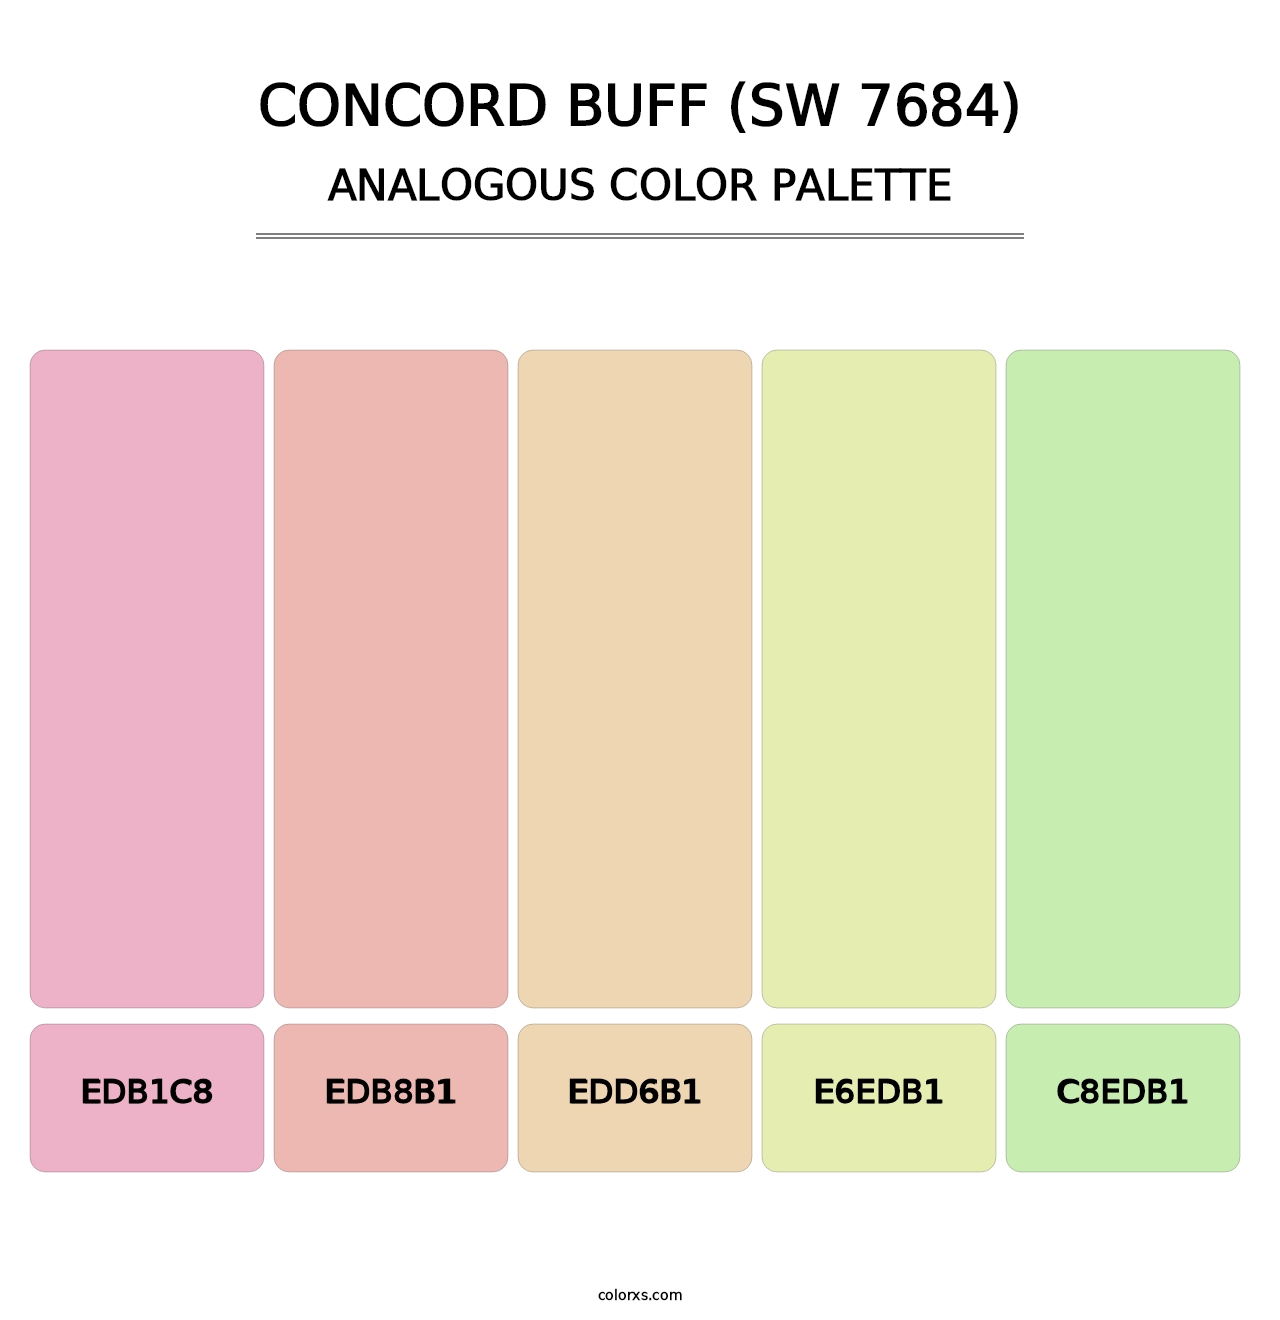 Concord Buff (SW 7684) - Analogous Color Palette